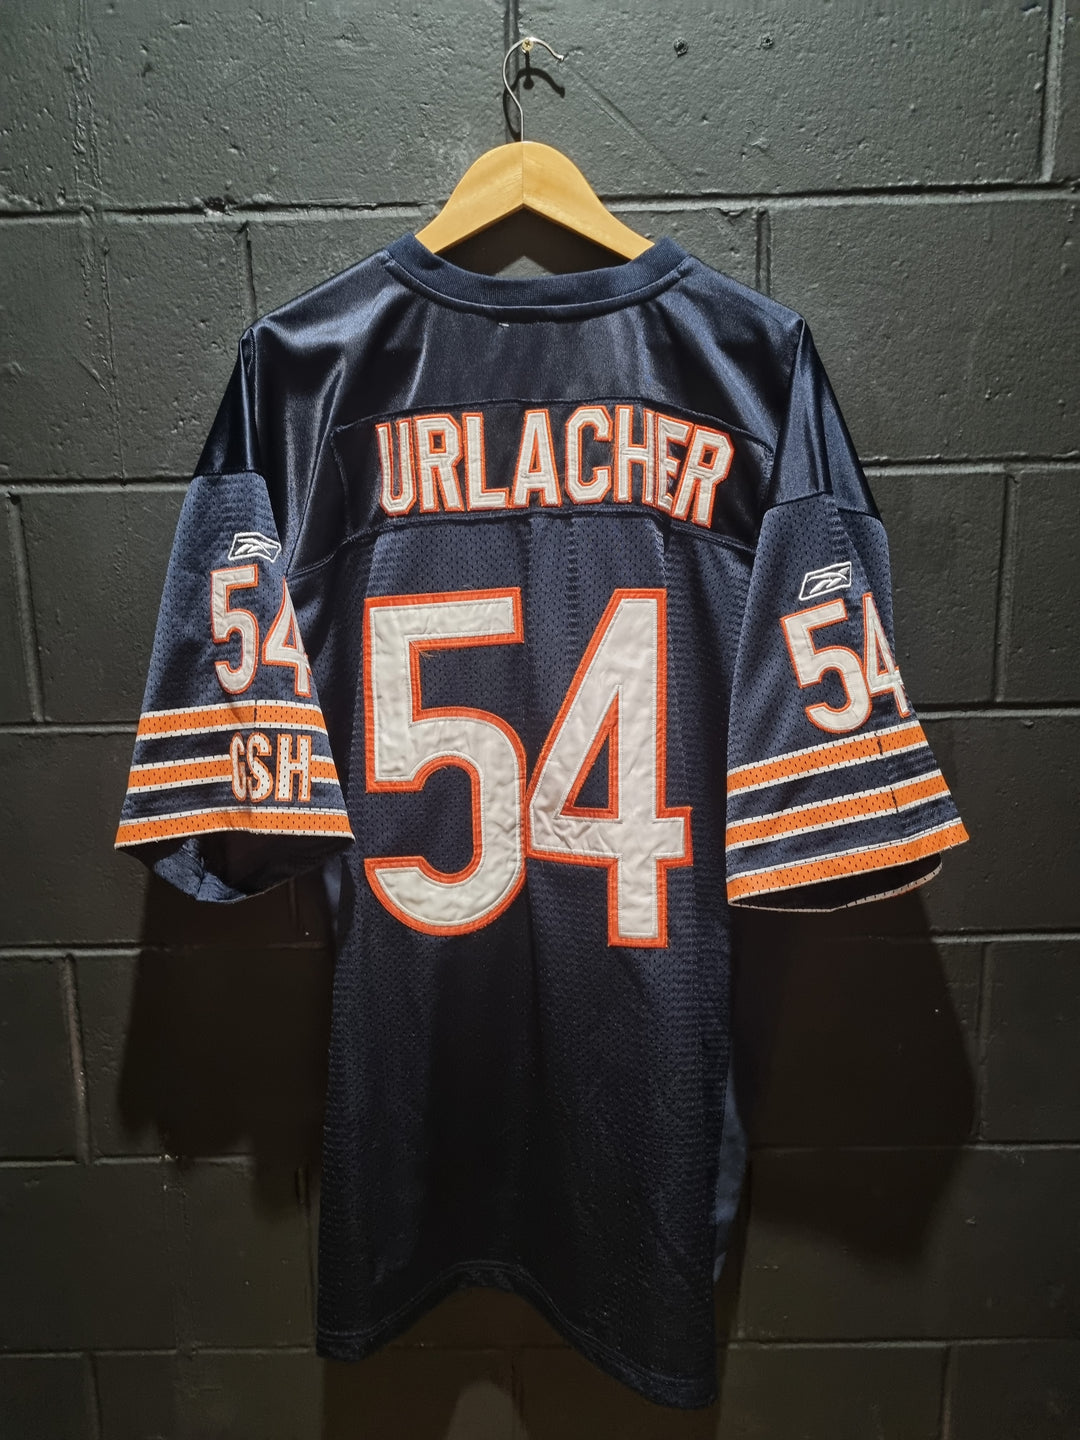 Chicago Bears Urlacher Reebok XL